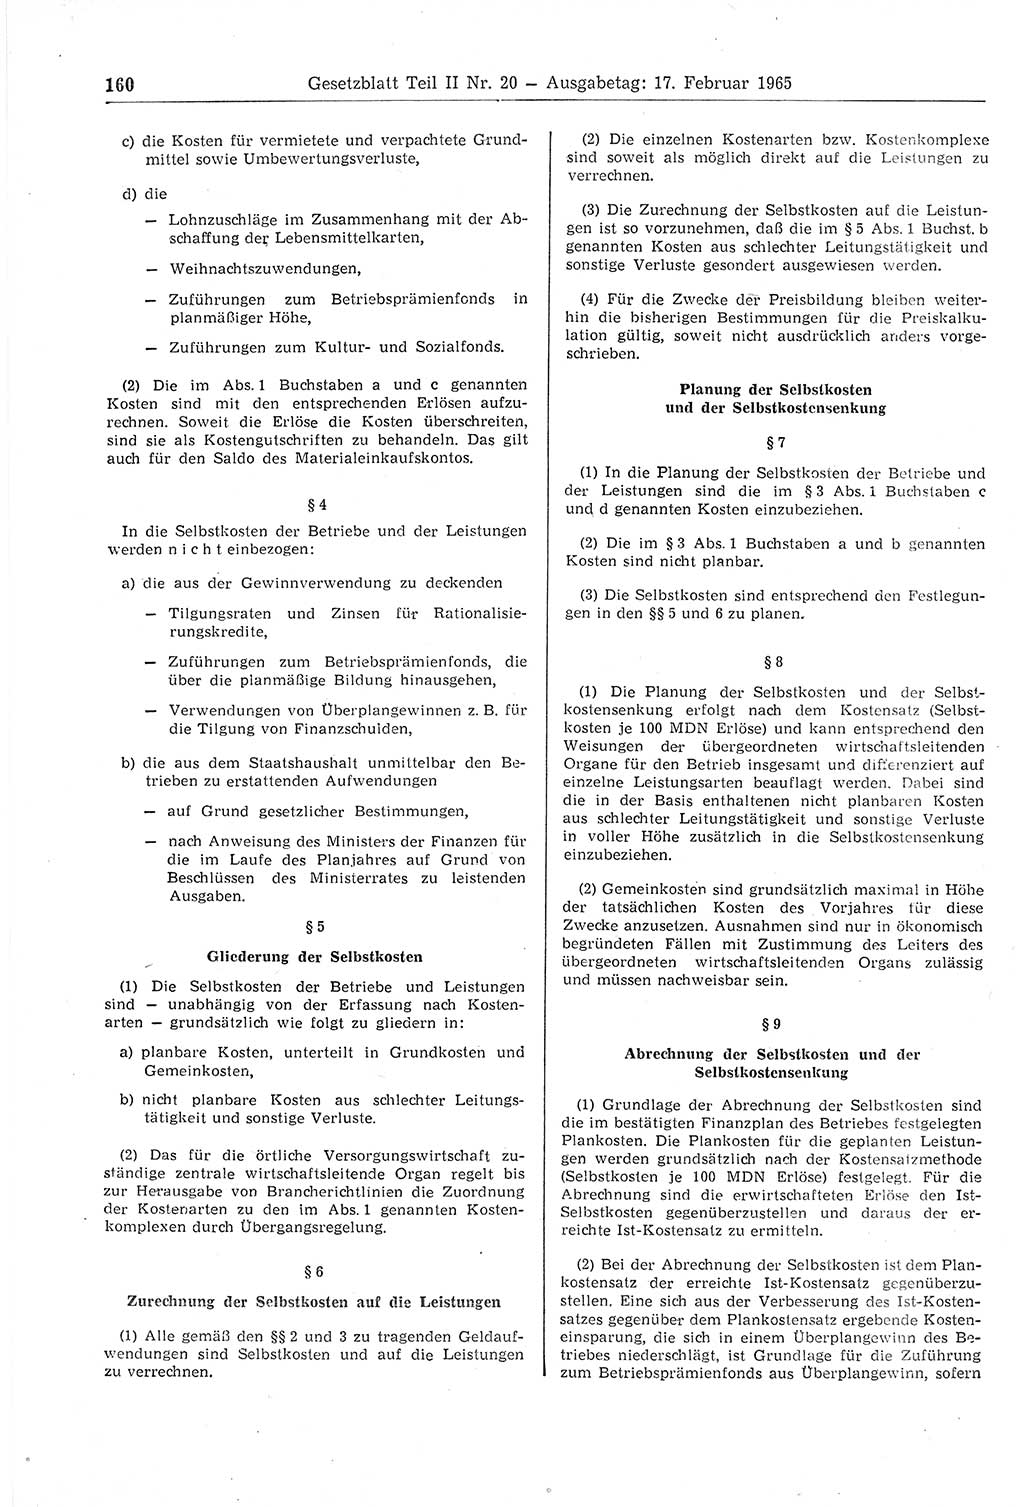 Gesetzblatt (GBl.) der Deutschen Demokratischen Republik (DDR) Teil ⅠⅠ 1965, Seite 160 (GBl. DDR ⅠⅠ 1965, S. 160)